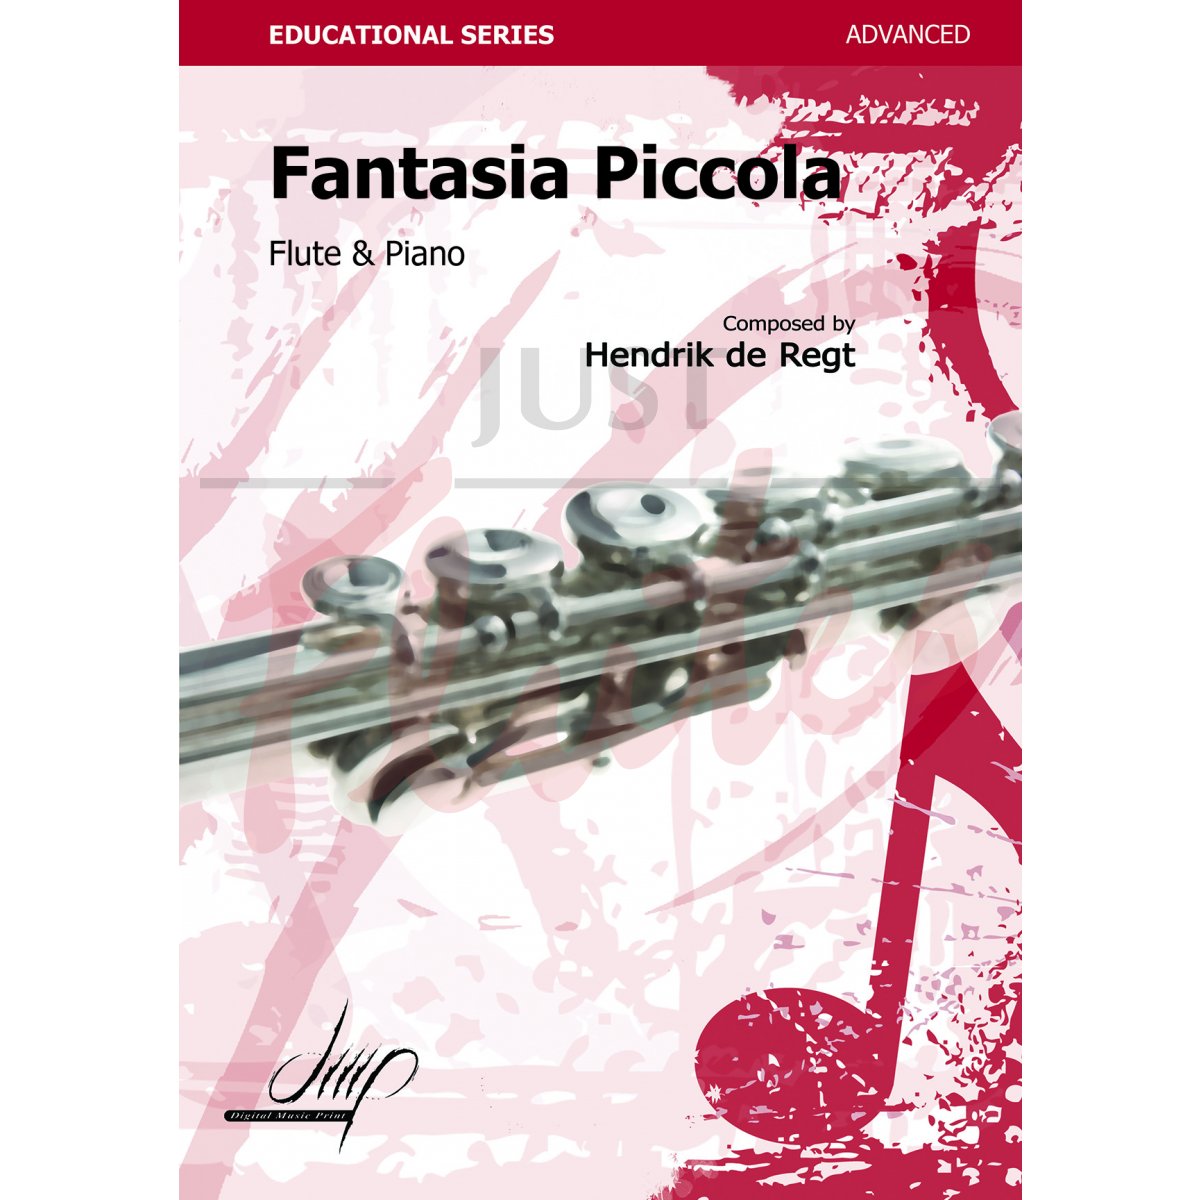 Fantasia Piccola